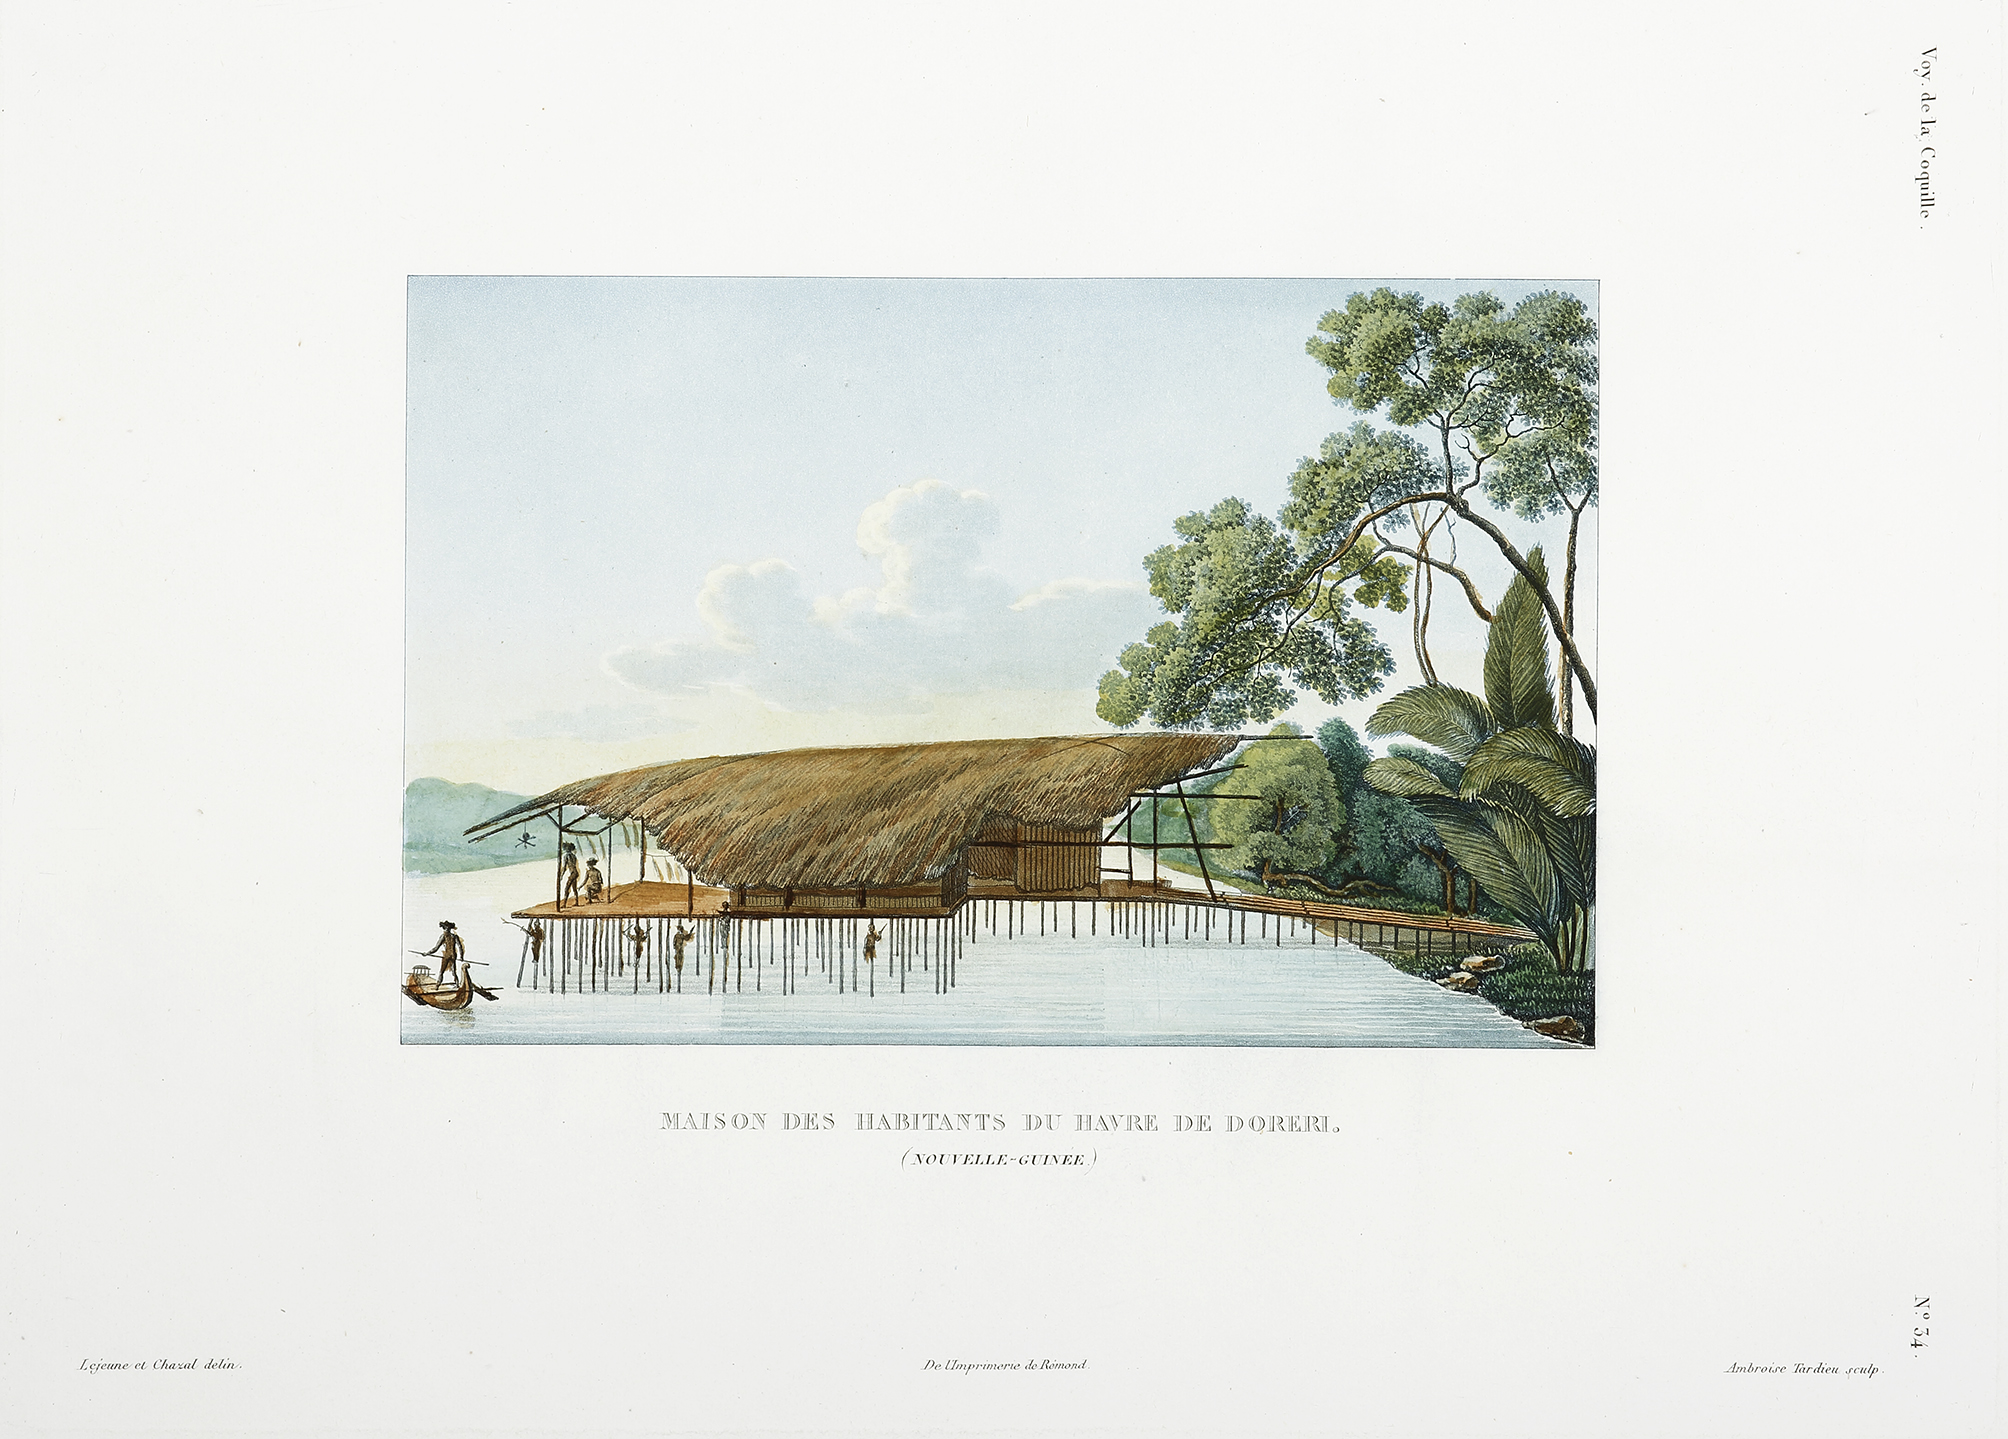 Maison des Habitants du Havre de Doreri. (Nouvelle-Guinee.) - Antique View from 1826